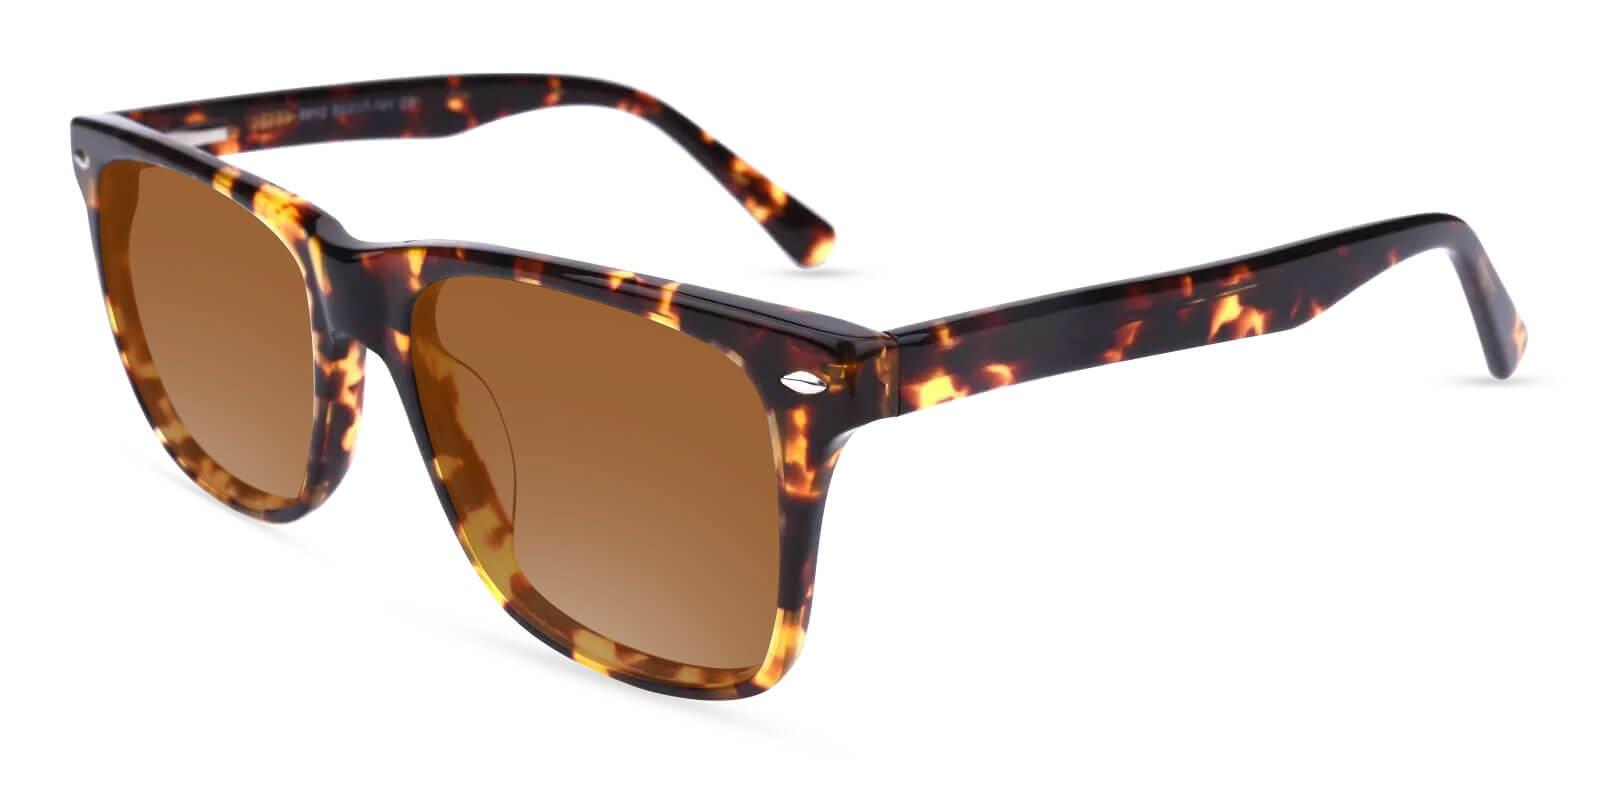 Hepburn Tortoise Acetate SpringHinges , Sunglasses , UniversalBridgeFit Frames from ABBE Glasses